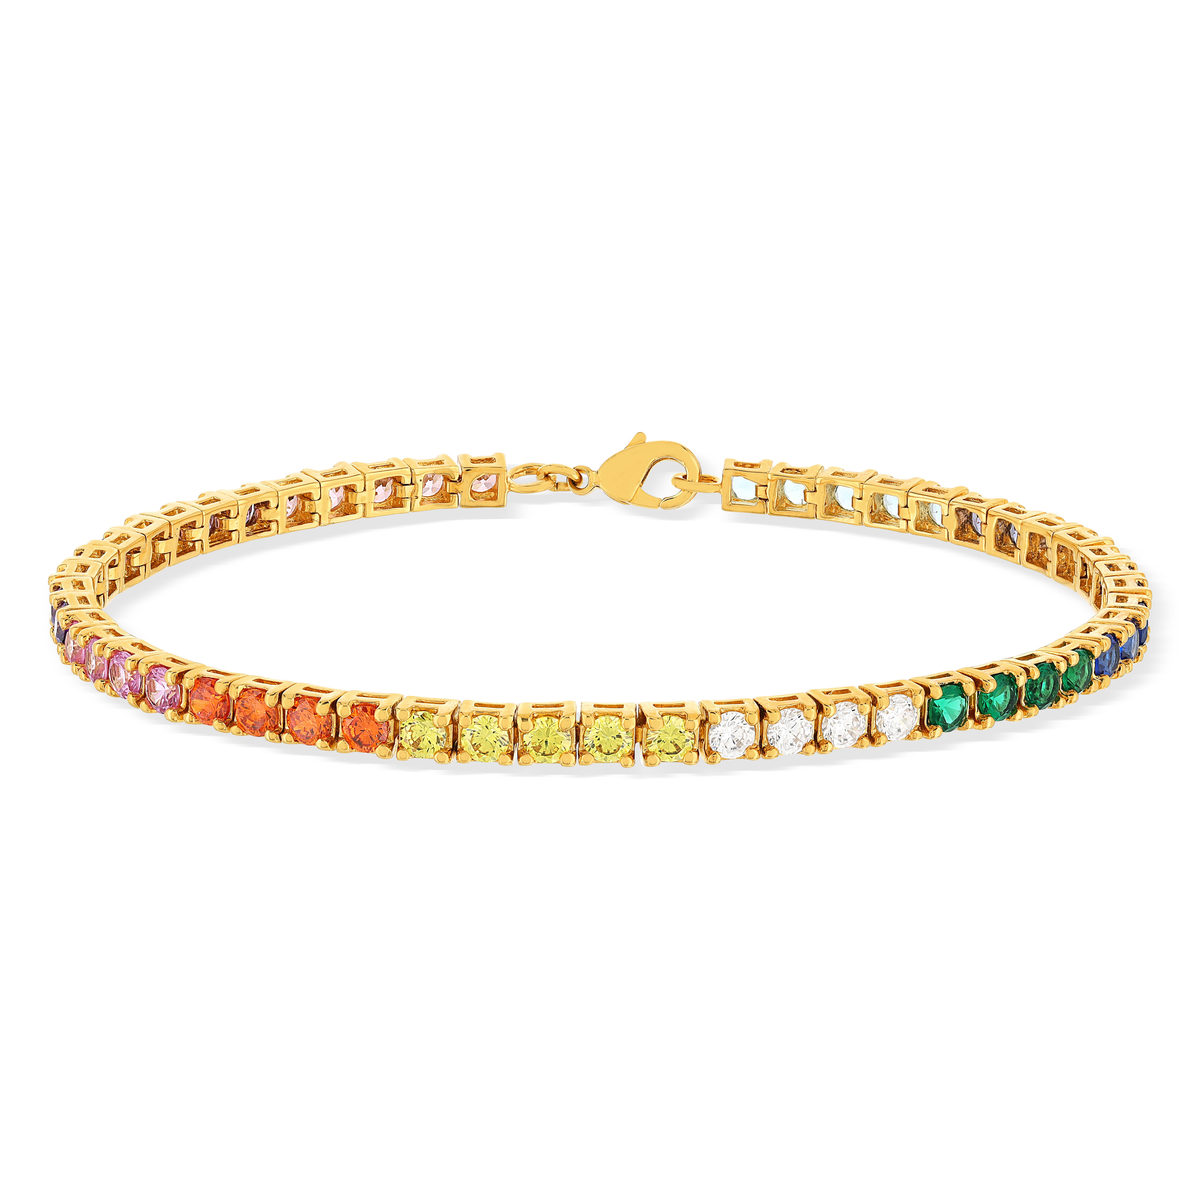 Bracelet plaqué or pierres synthétiques multicolores 19cm